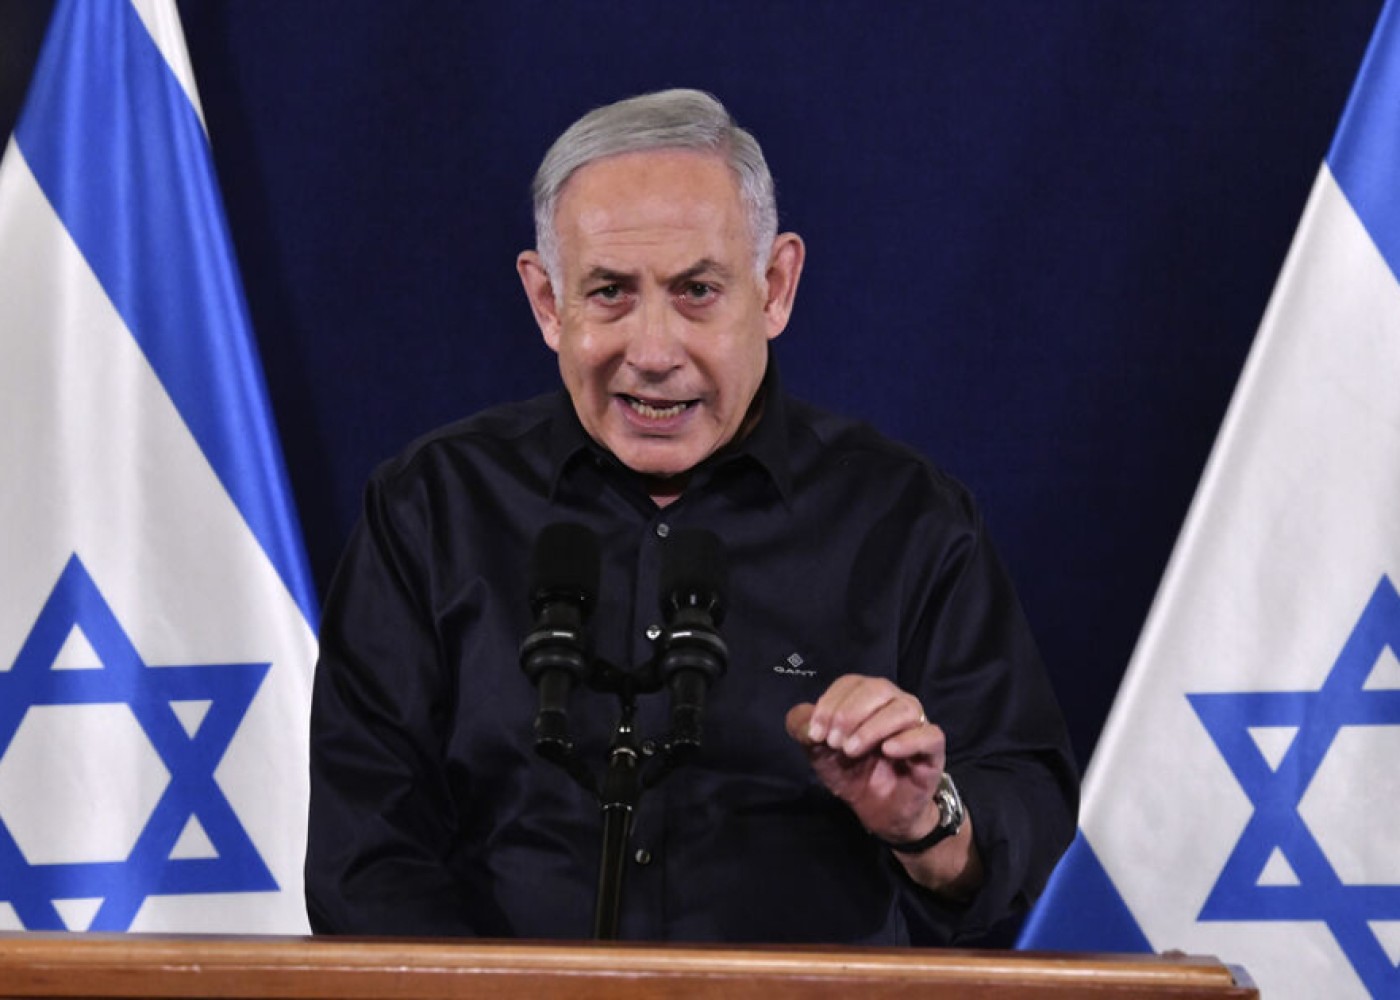 "ABŞ-dan silah tədarükü məsələsi həll edilməlidir" - Netanyahu